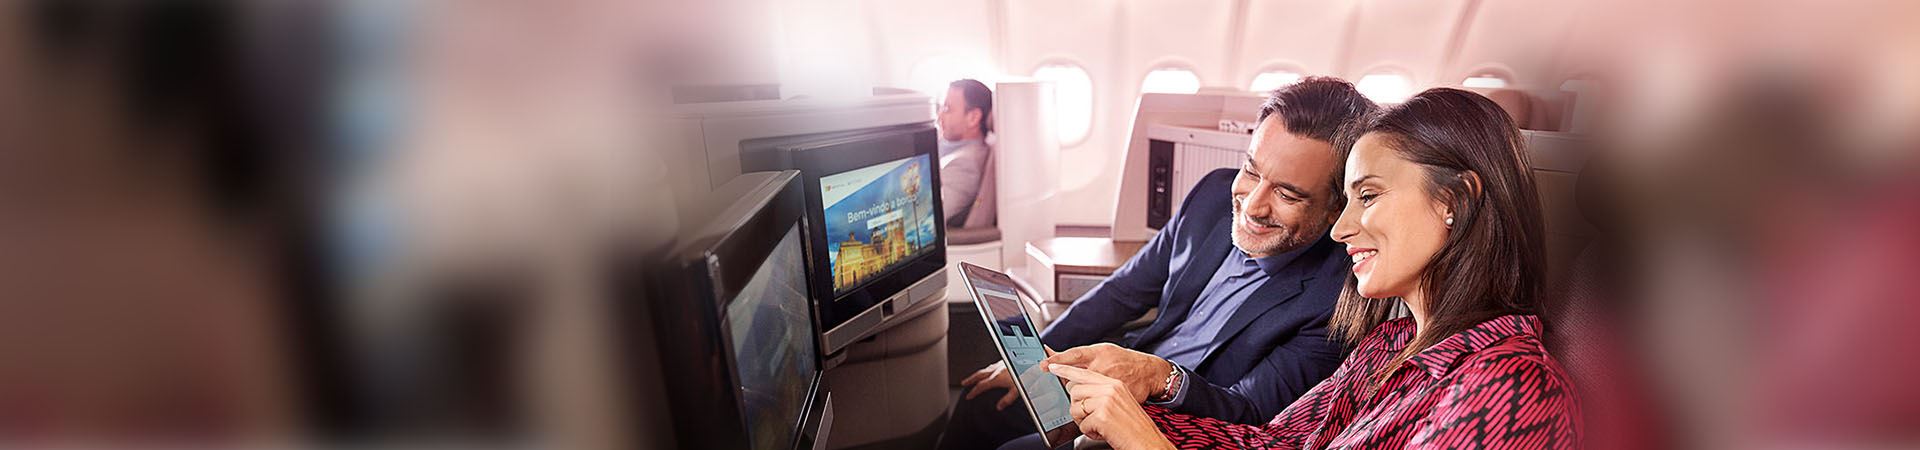 Gros plan d'une femme souriante et d'un homme assis à bord d'un avion. La femme tient une tablette et l'homme la regarde. Les deux pointent vers l'écran de la tablette. Devant eux se trouvent deux écrans, intégrés aux sièges de l'avion.